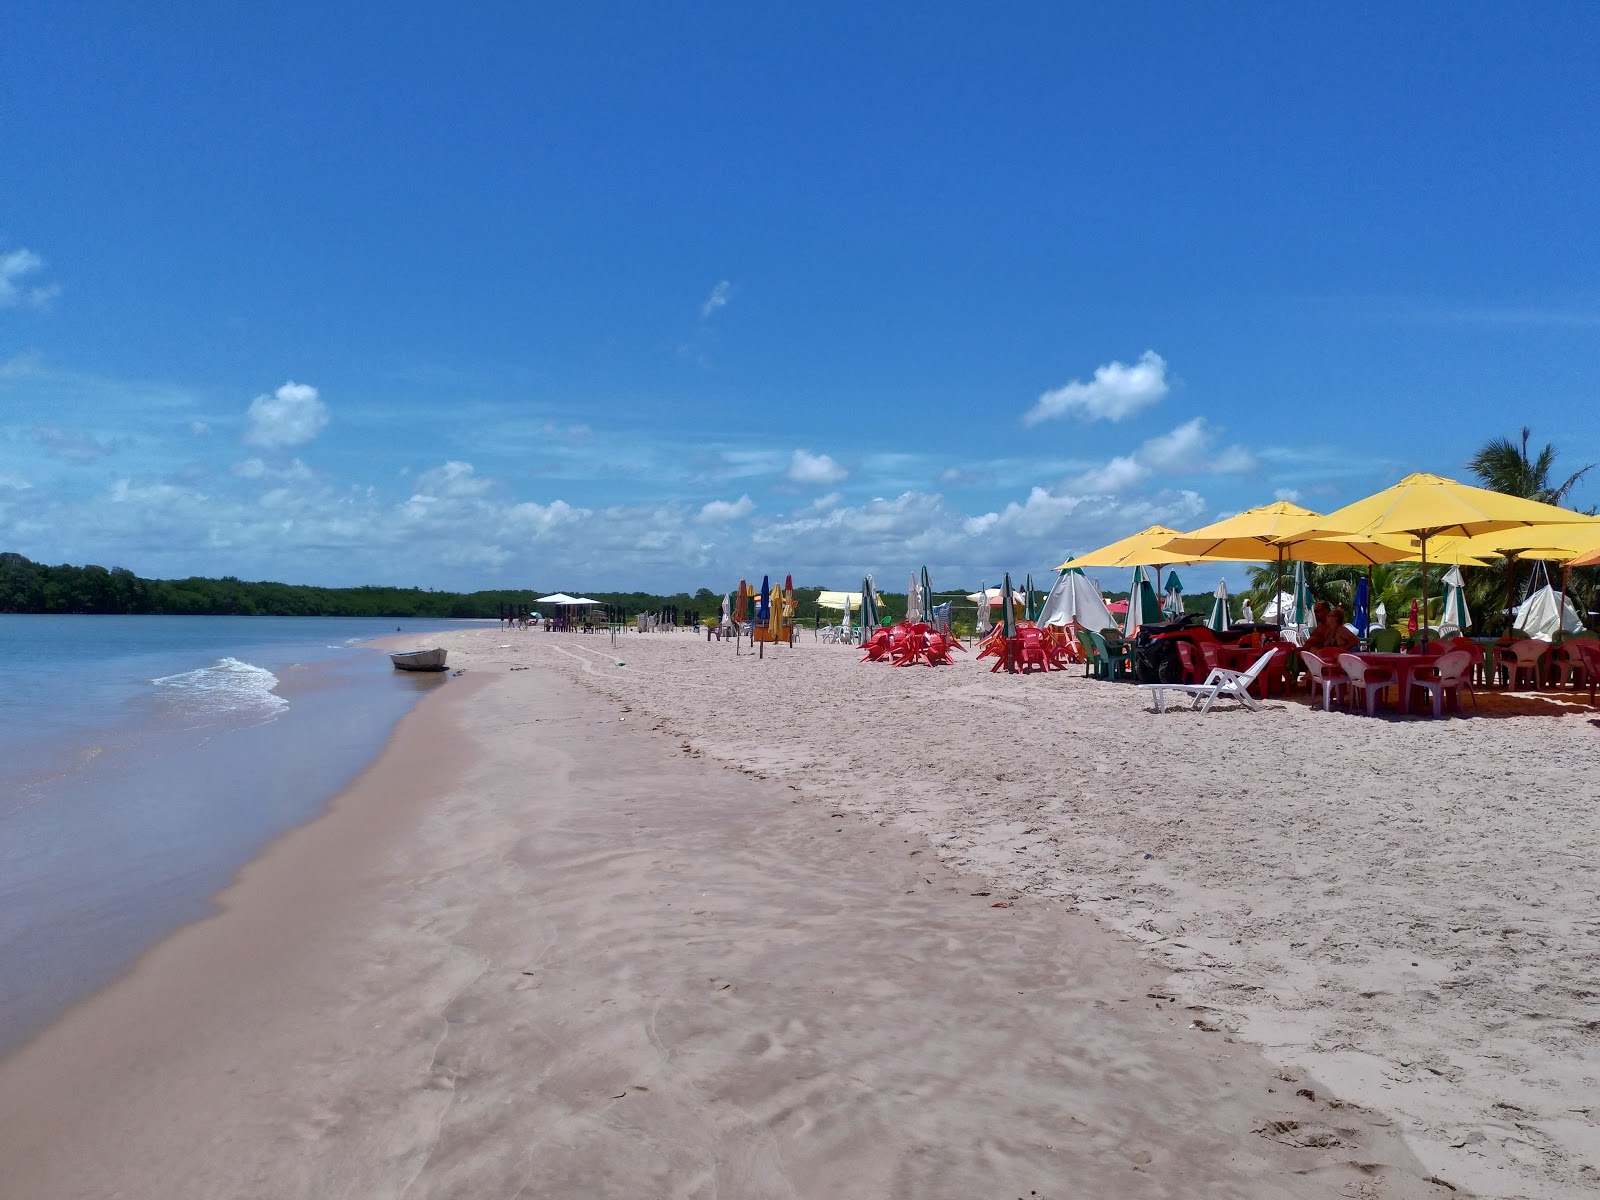 Foto av Praia da Barra med rymlig strand